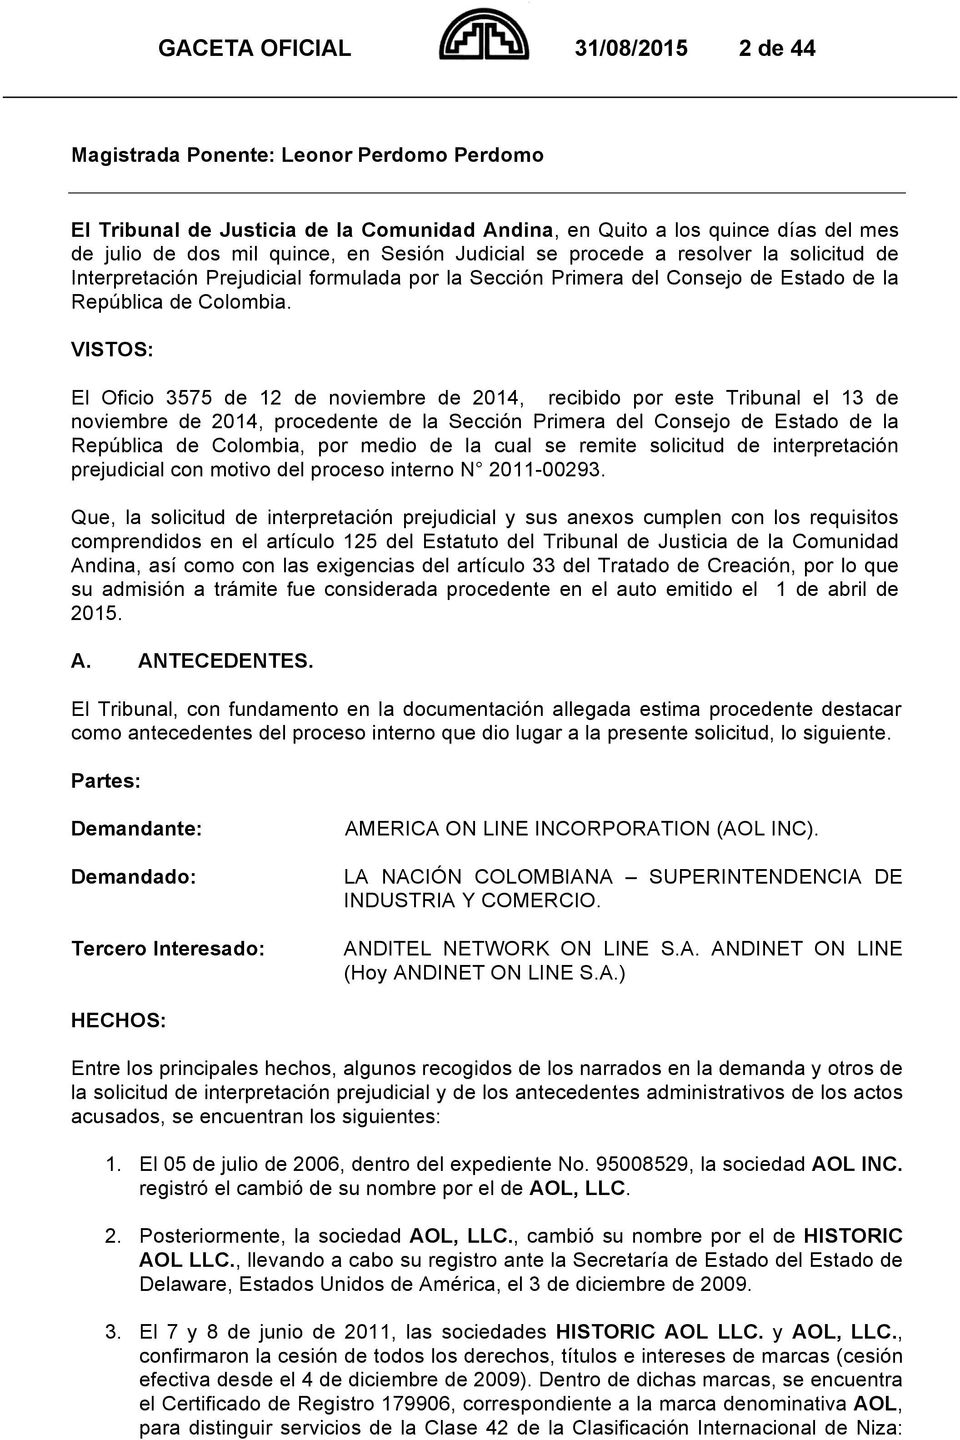 VISTOS: El Oficio 3575 de 12 de noviembre de 2014, recibido por este Tribunal el 13 de noviembre de 2014, procedente de la Sección Primera del Consejo de Estado de la República de Colombia, por medio